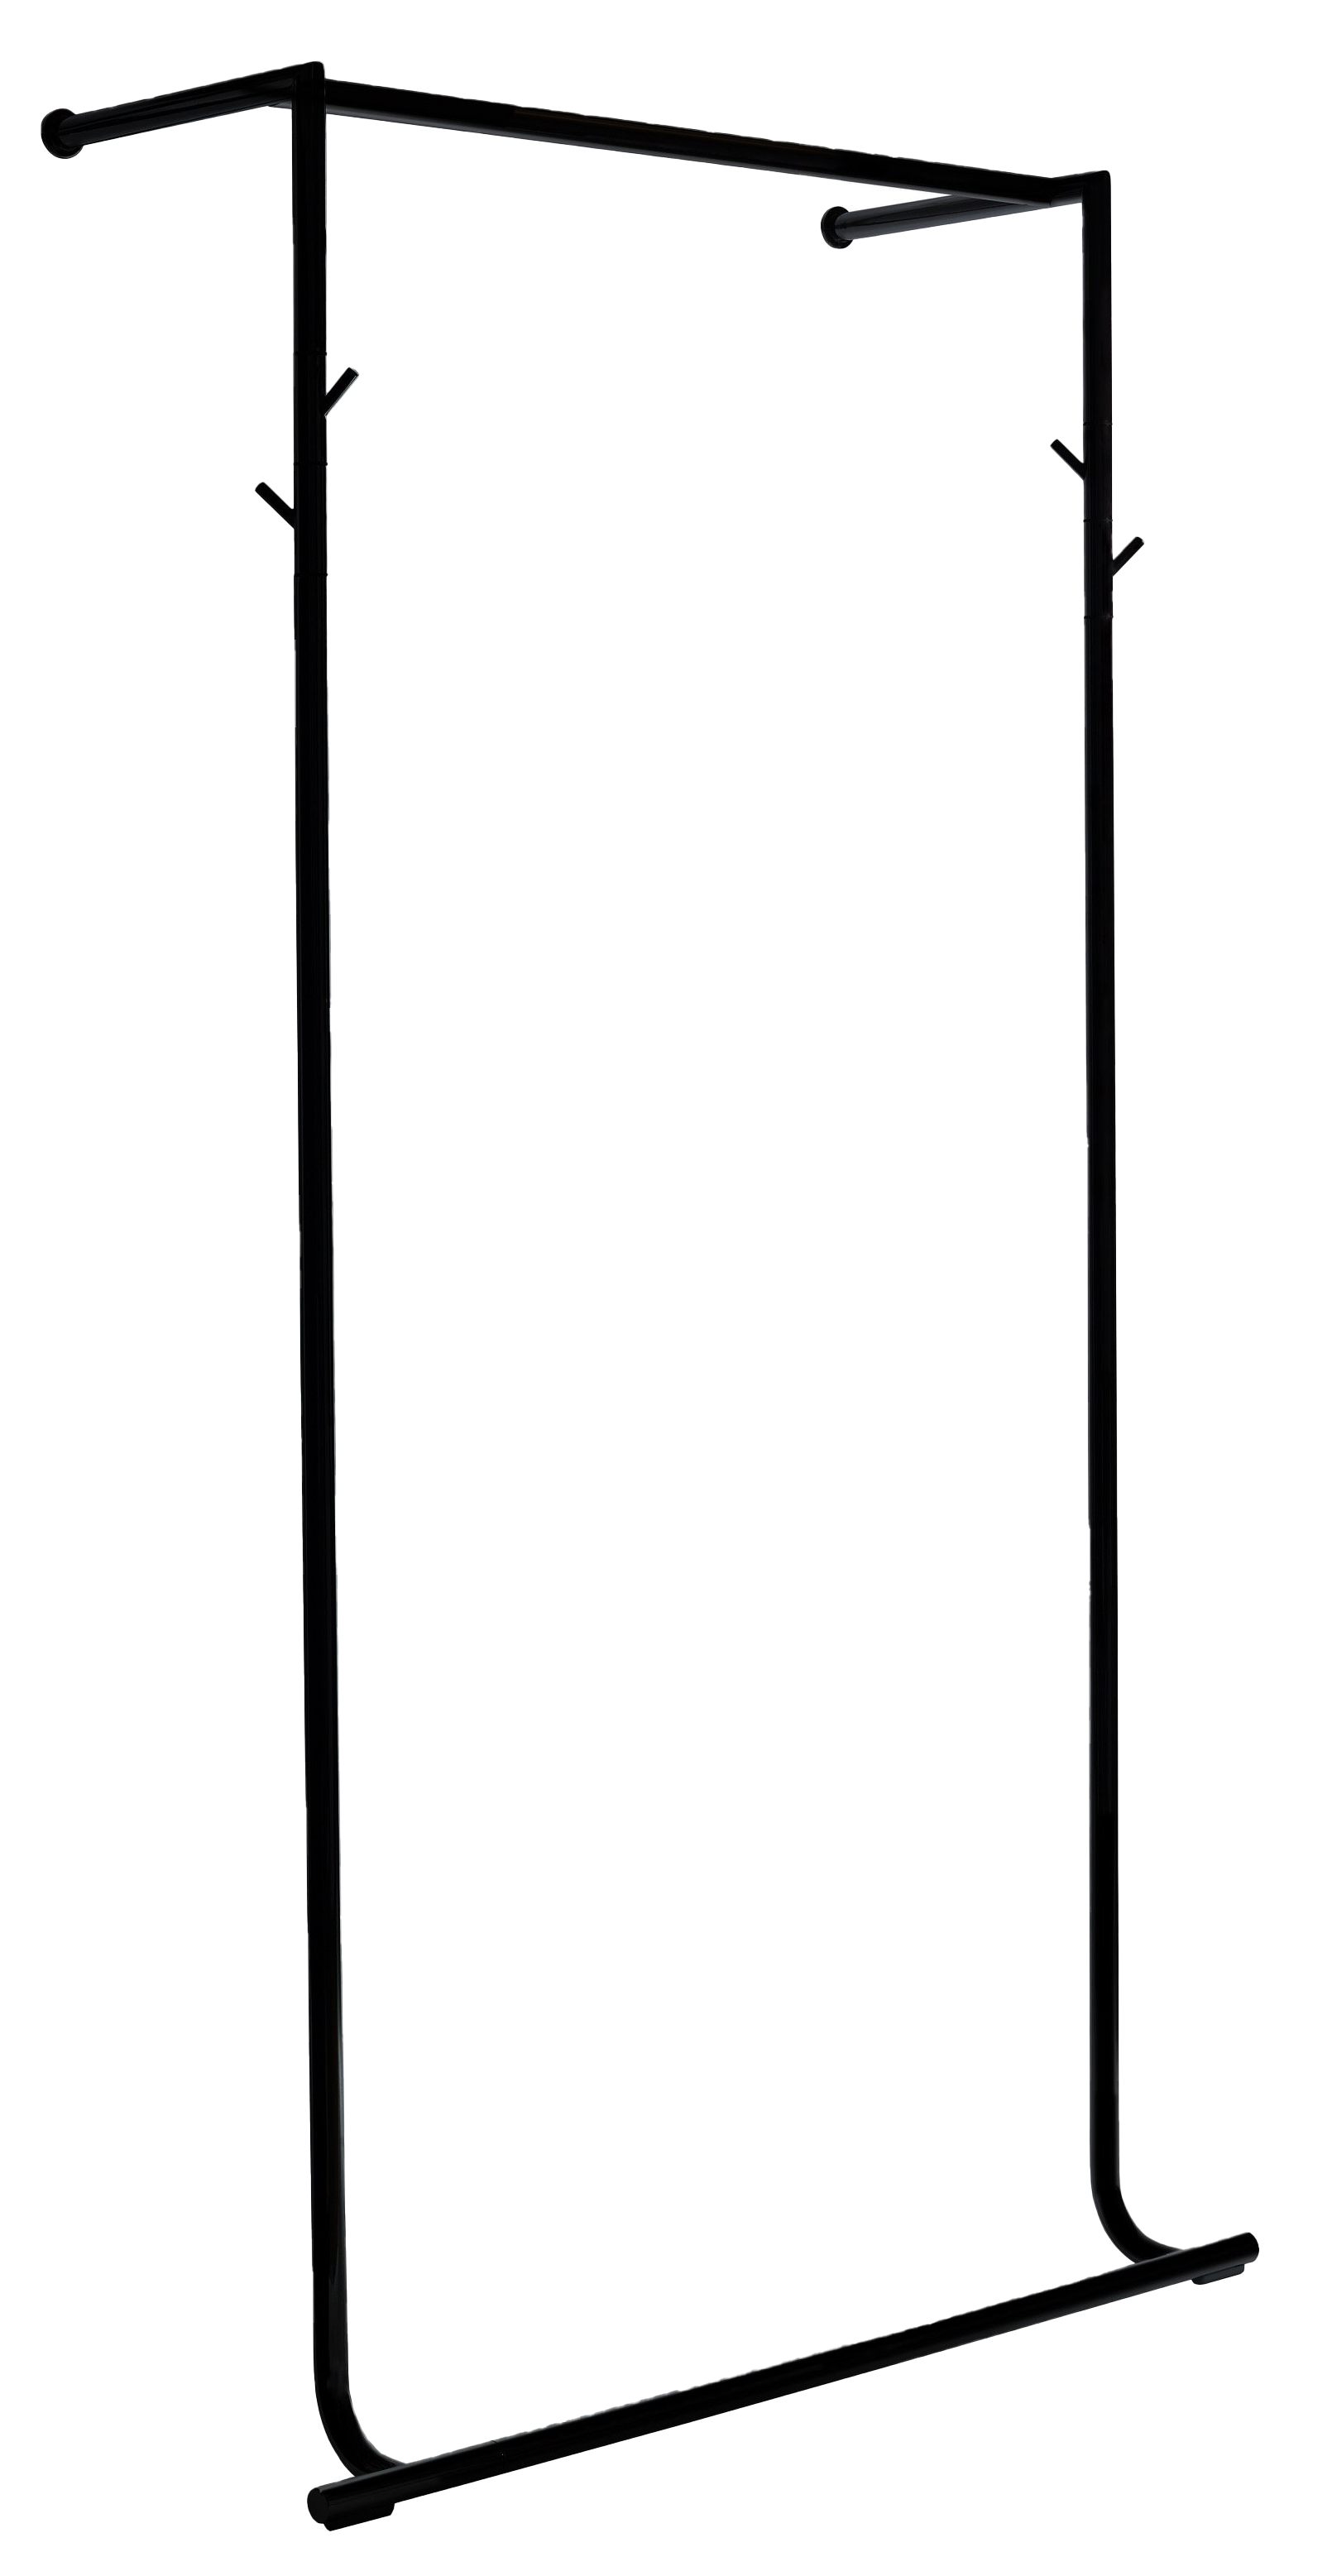 LUCCA Anlehngarderobe in schwarz präsentiert im Onlineshop von KAQTU Design AG. Kleiderständer ist von Pieperconcept